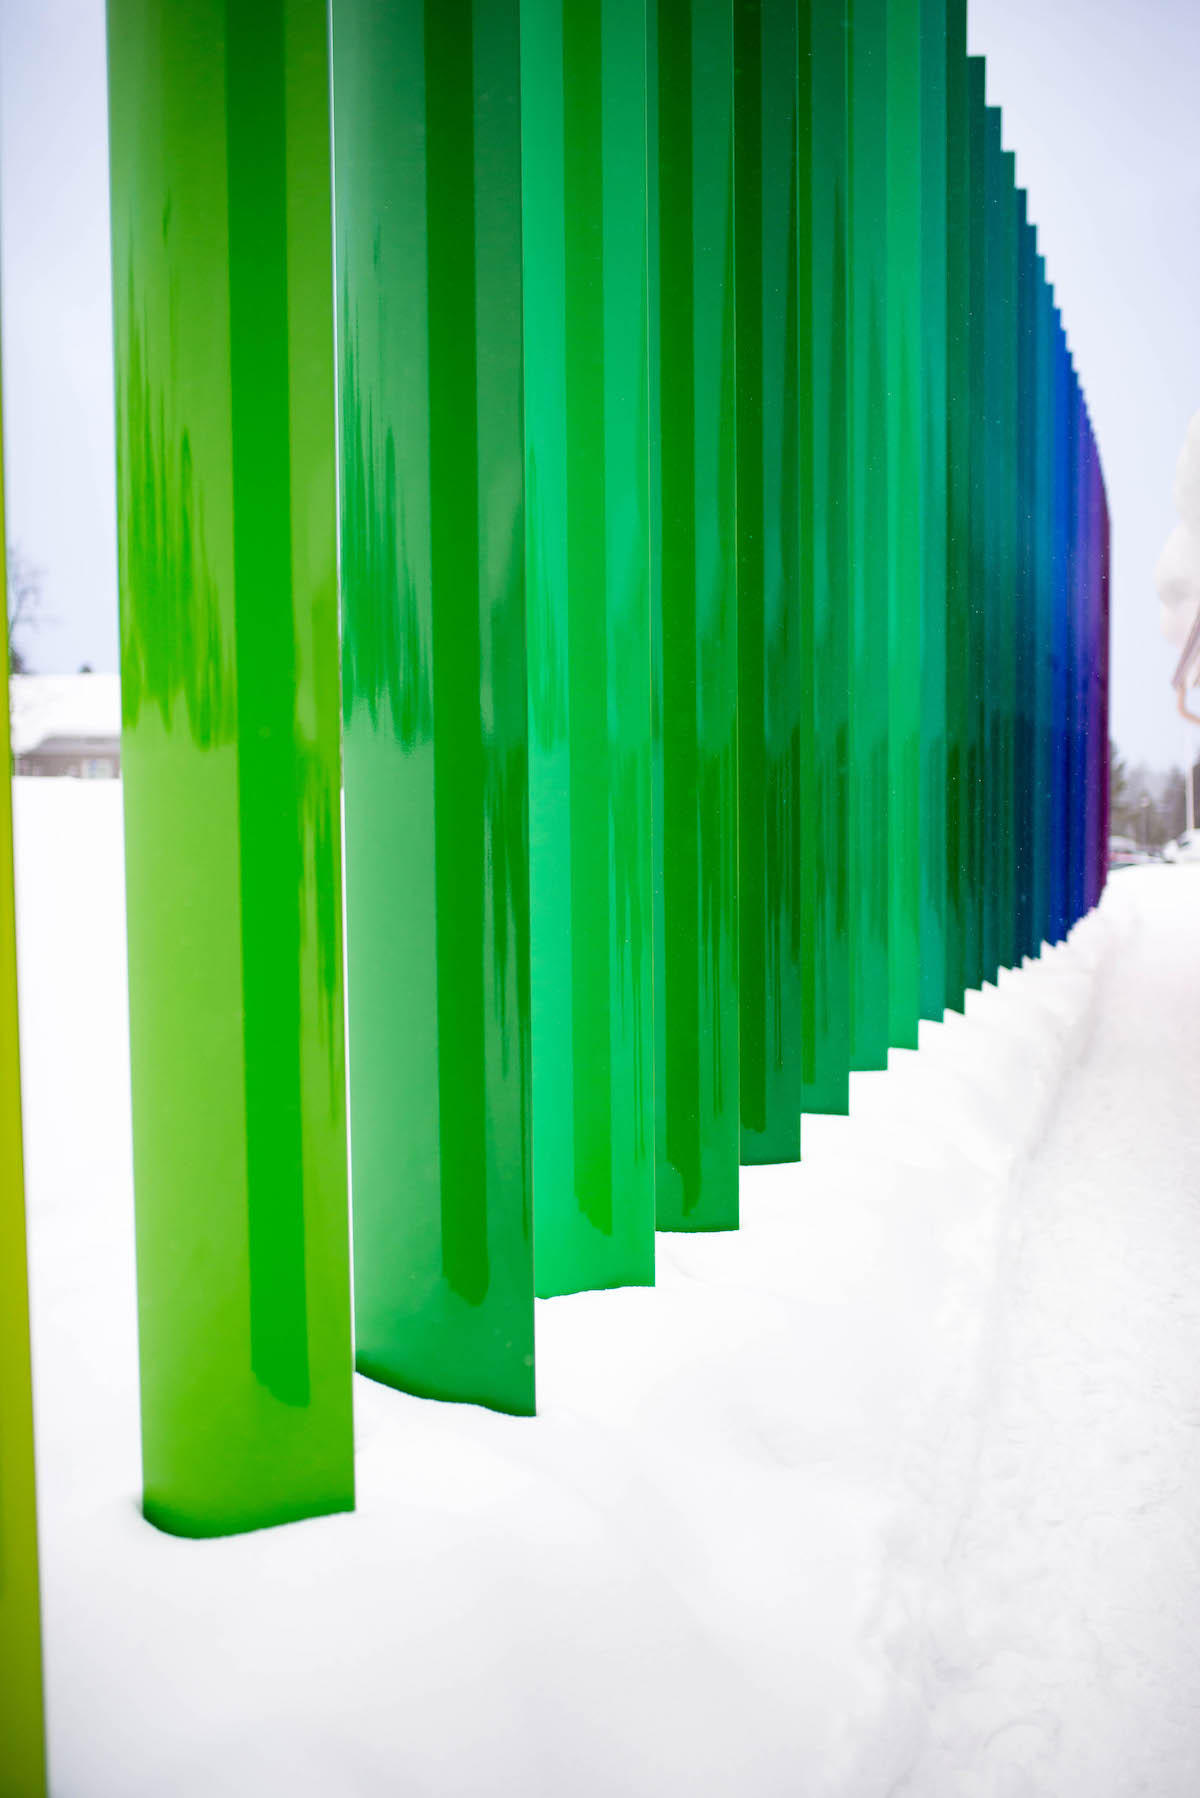 Saariselka Finland Rainbow Fence